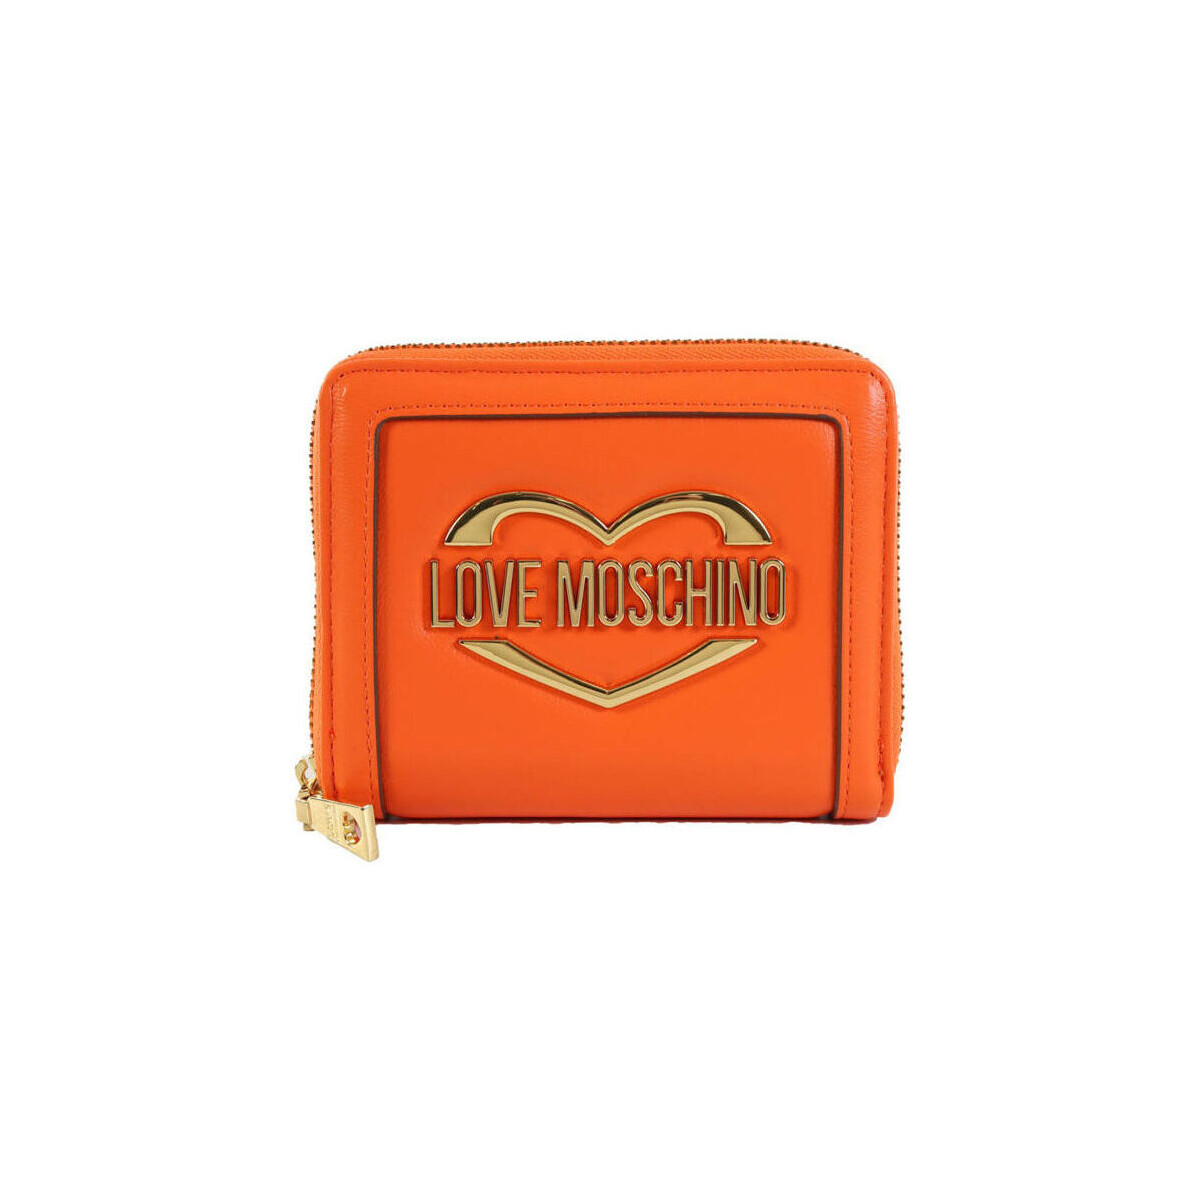 Τσάντες Γυναίκα Πορτοφόλια Love Moschino - jc5623pp1gld1 Orange